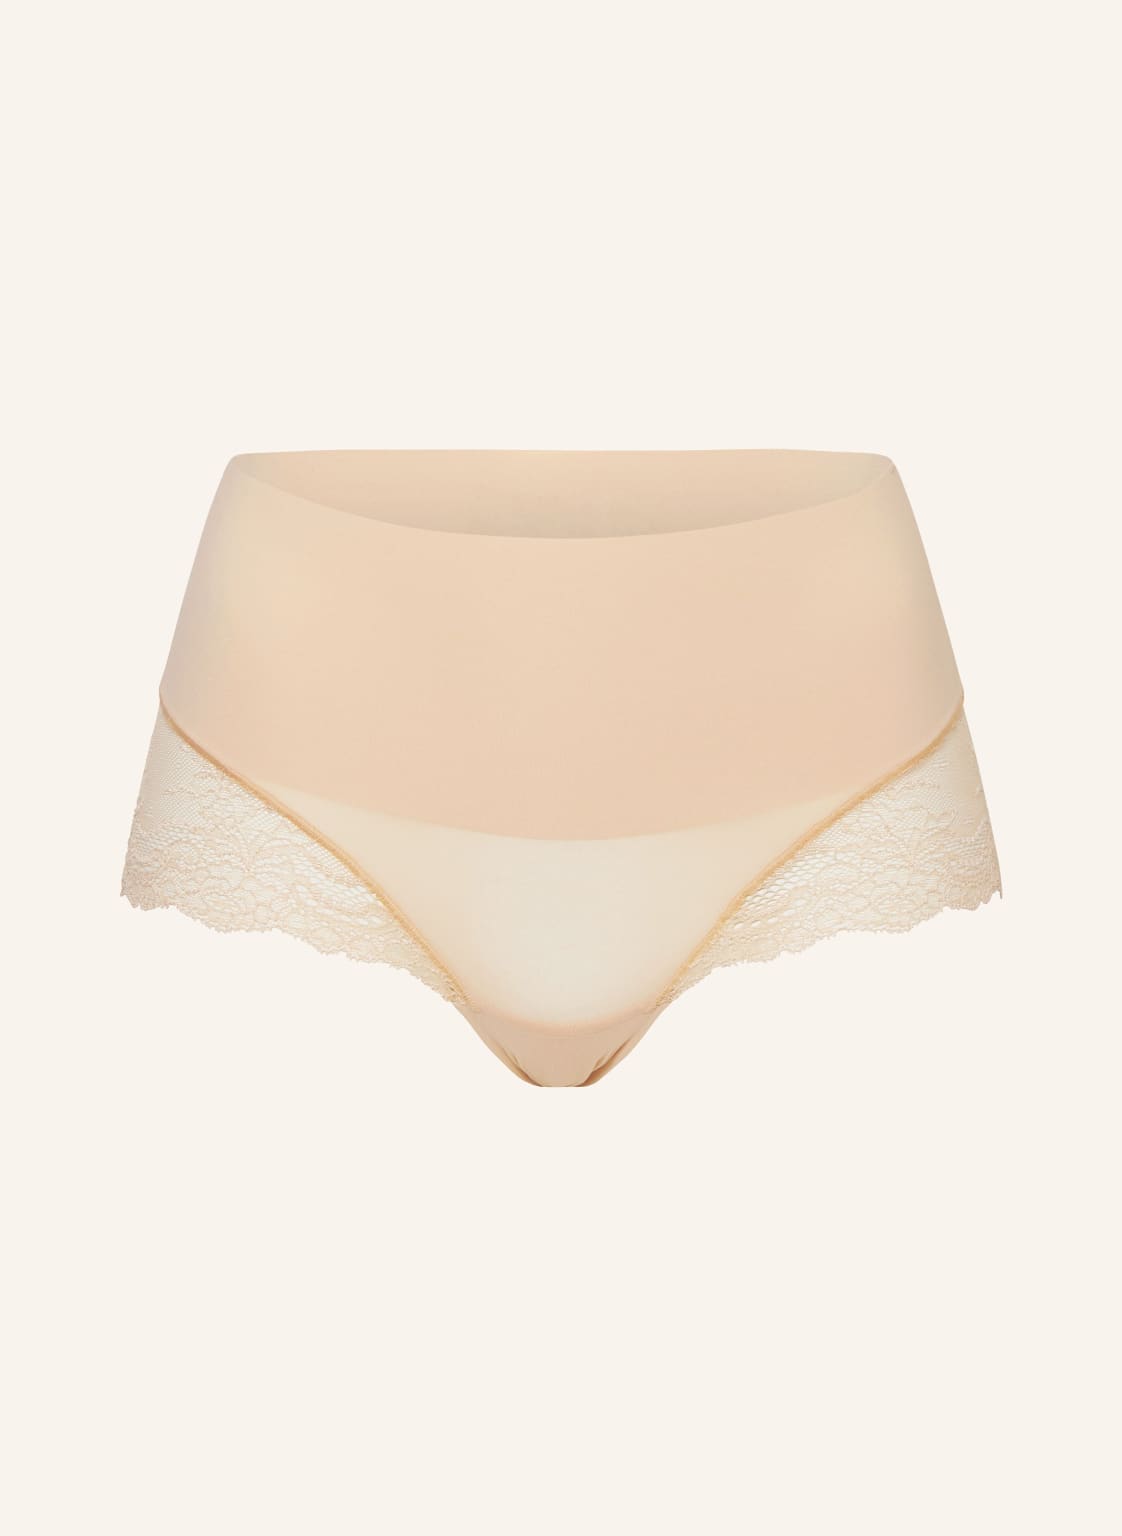 Spanx Shape-Panty Undie-Tectable Lace beige von Spanx